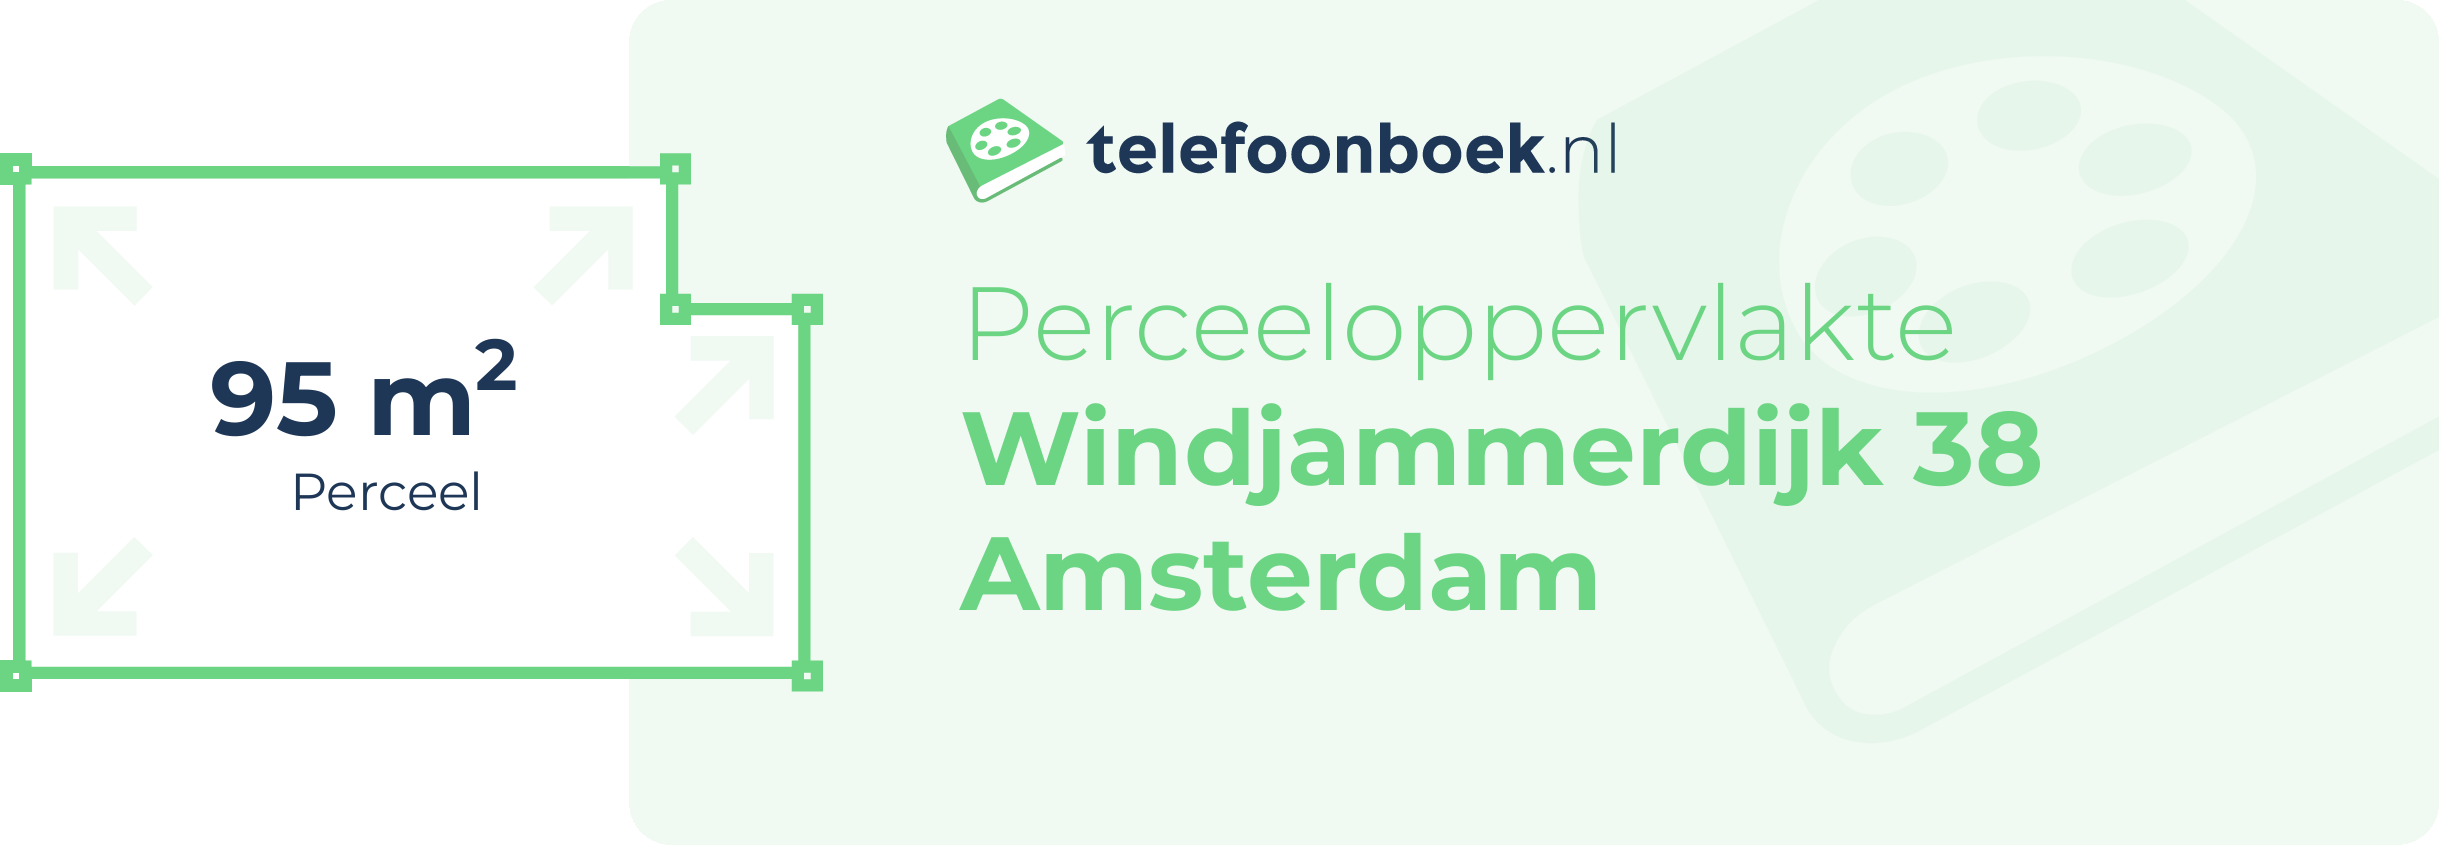 Perceeloppervlakte Windjammerdijk 38 Amsterdam